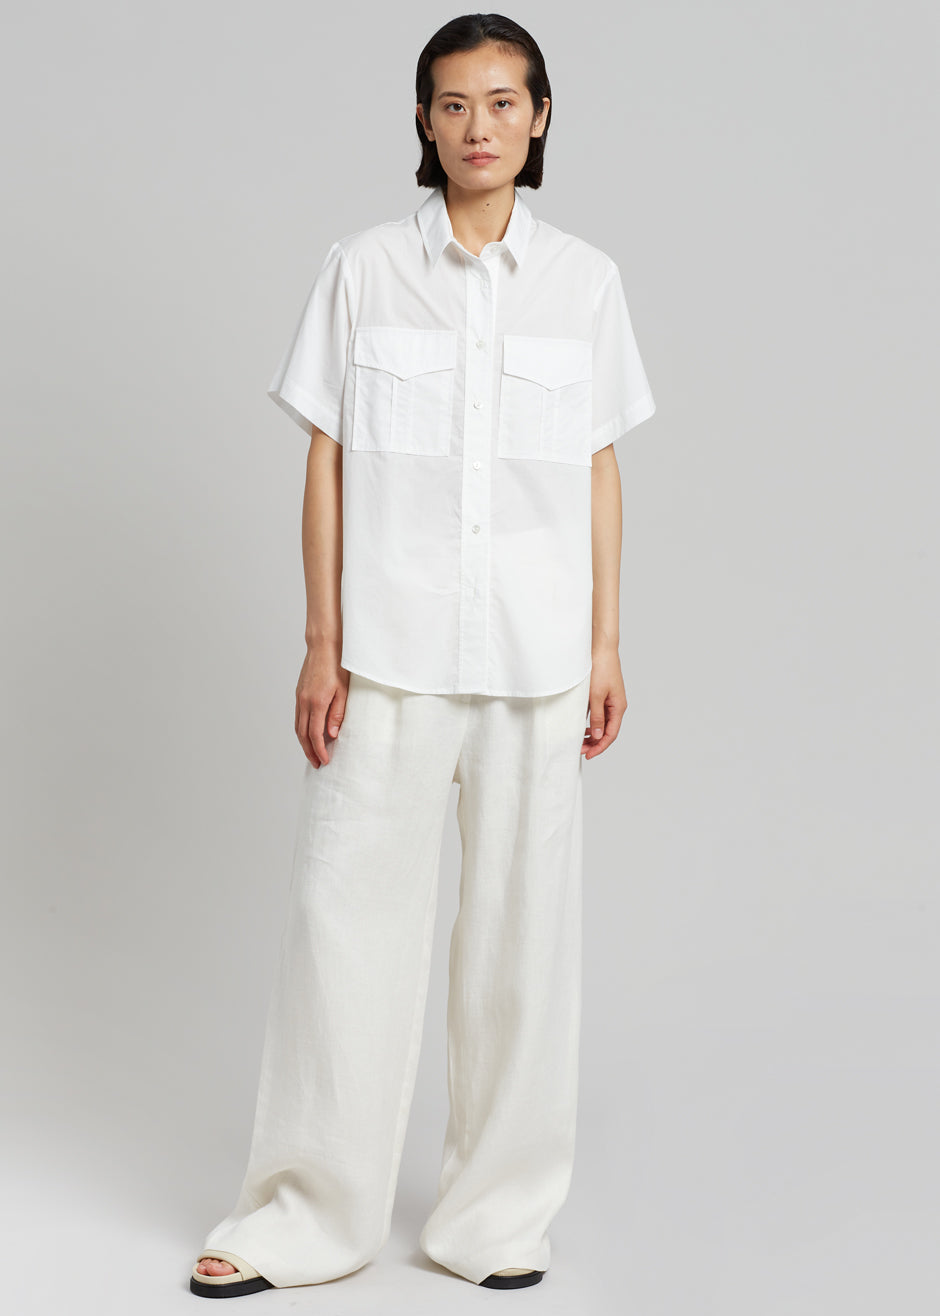 MATIN Short Sleeve Pocket Shirt - White – The Frankie Shop